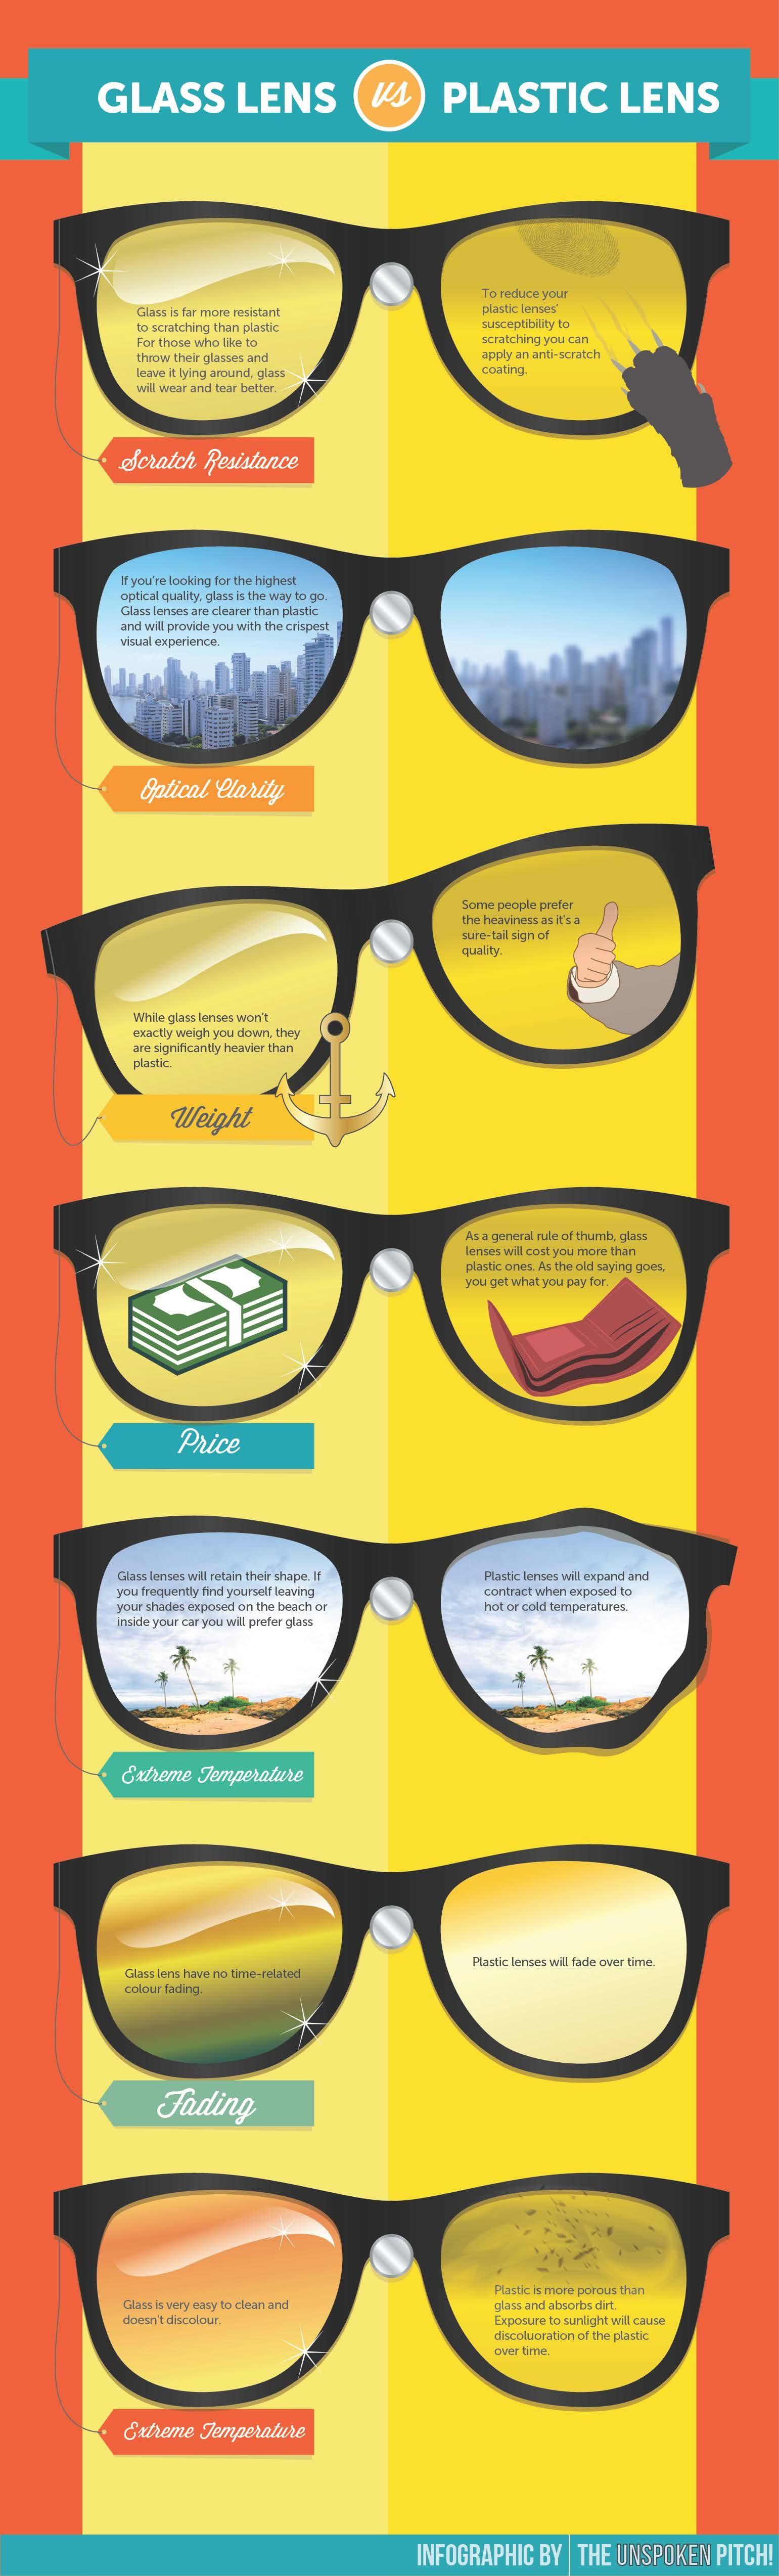 Lentes de vidrio vs. lentes de plástico #Infografía #Curiosidades